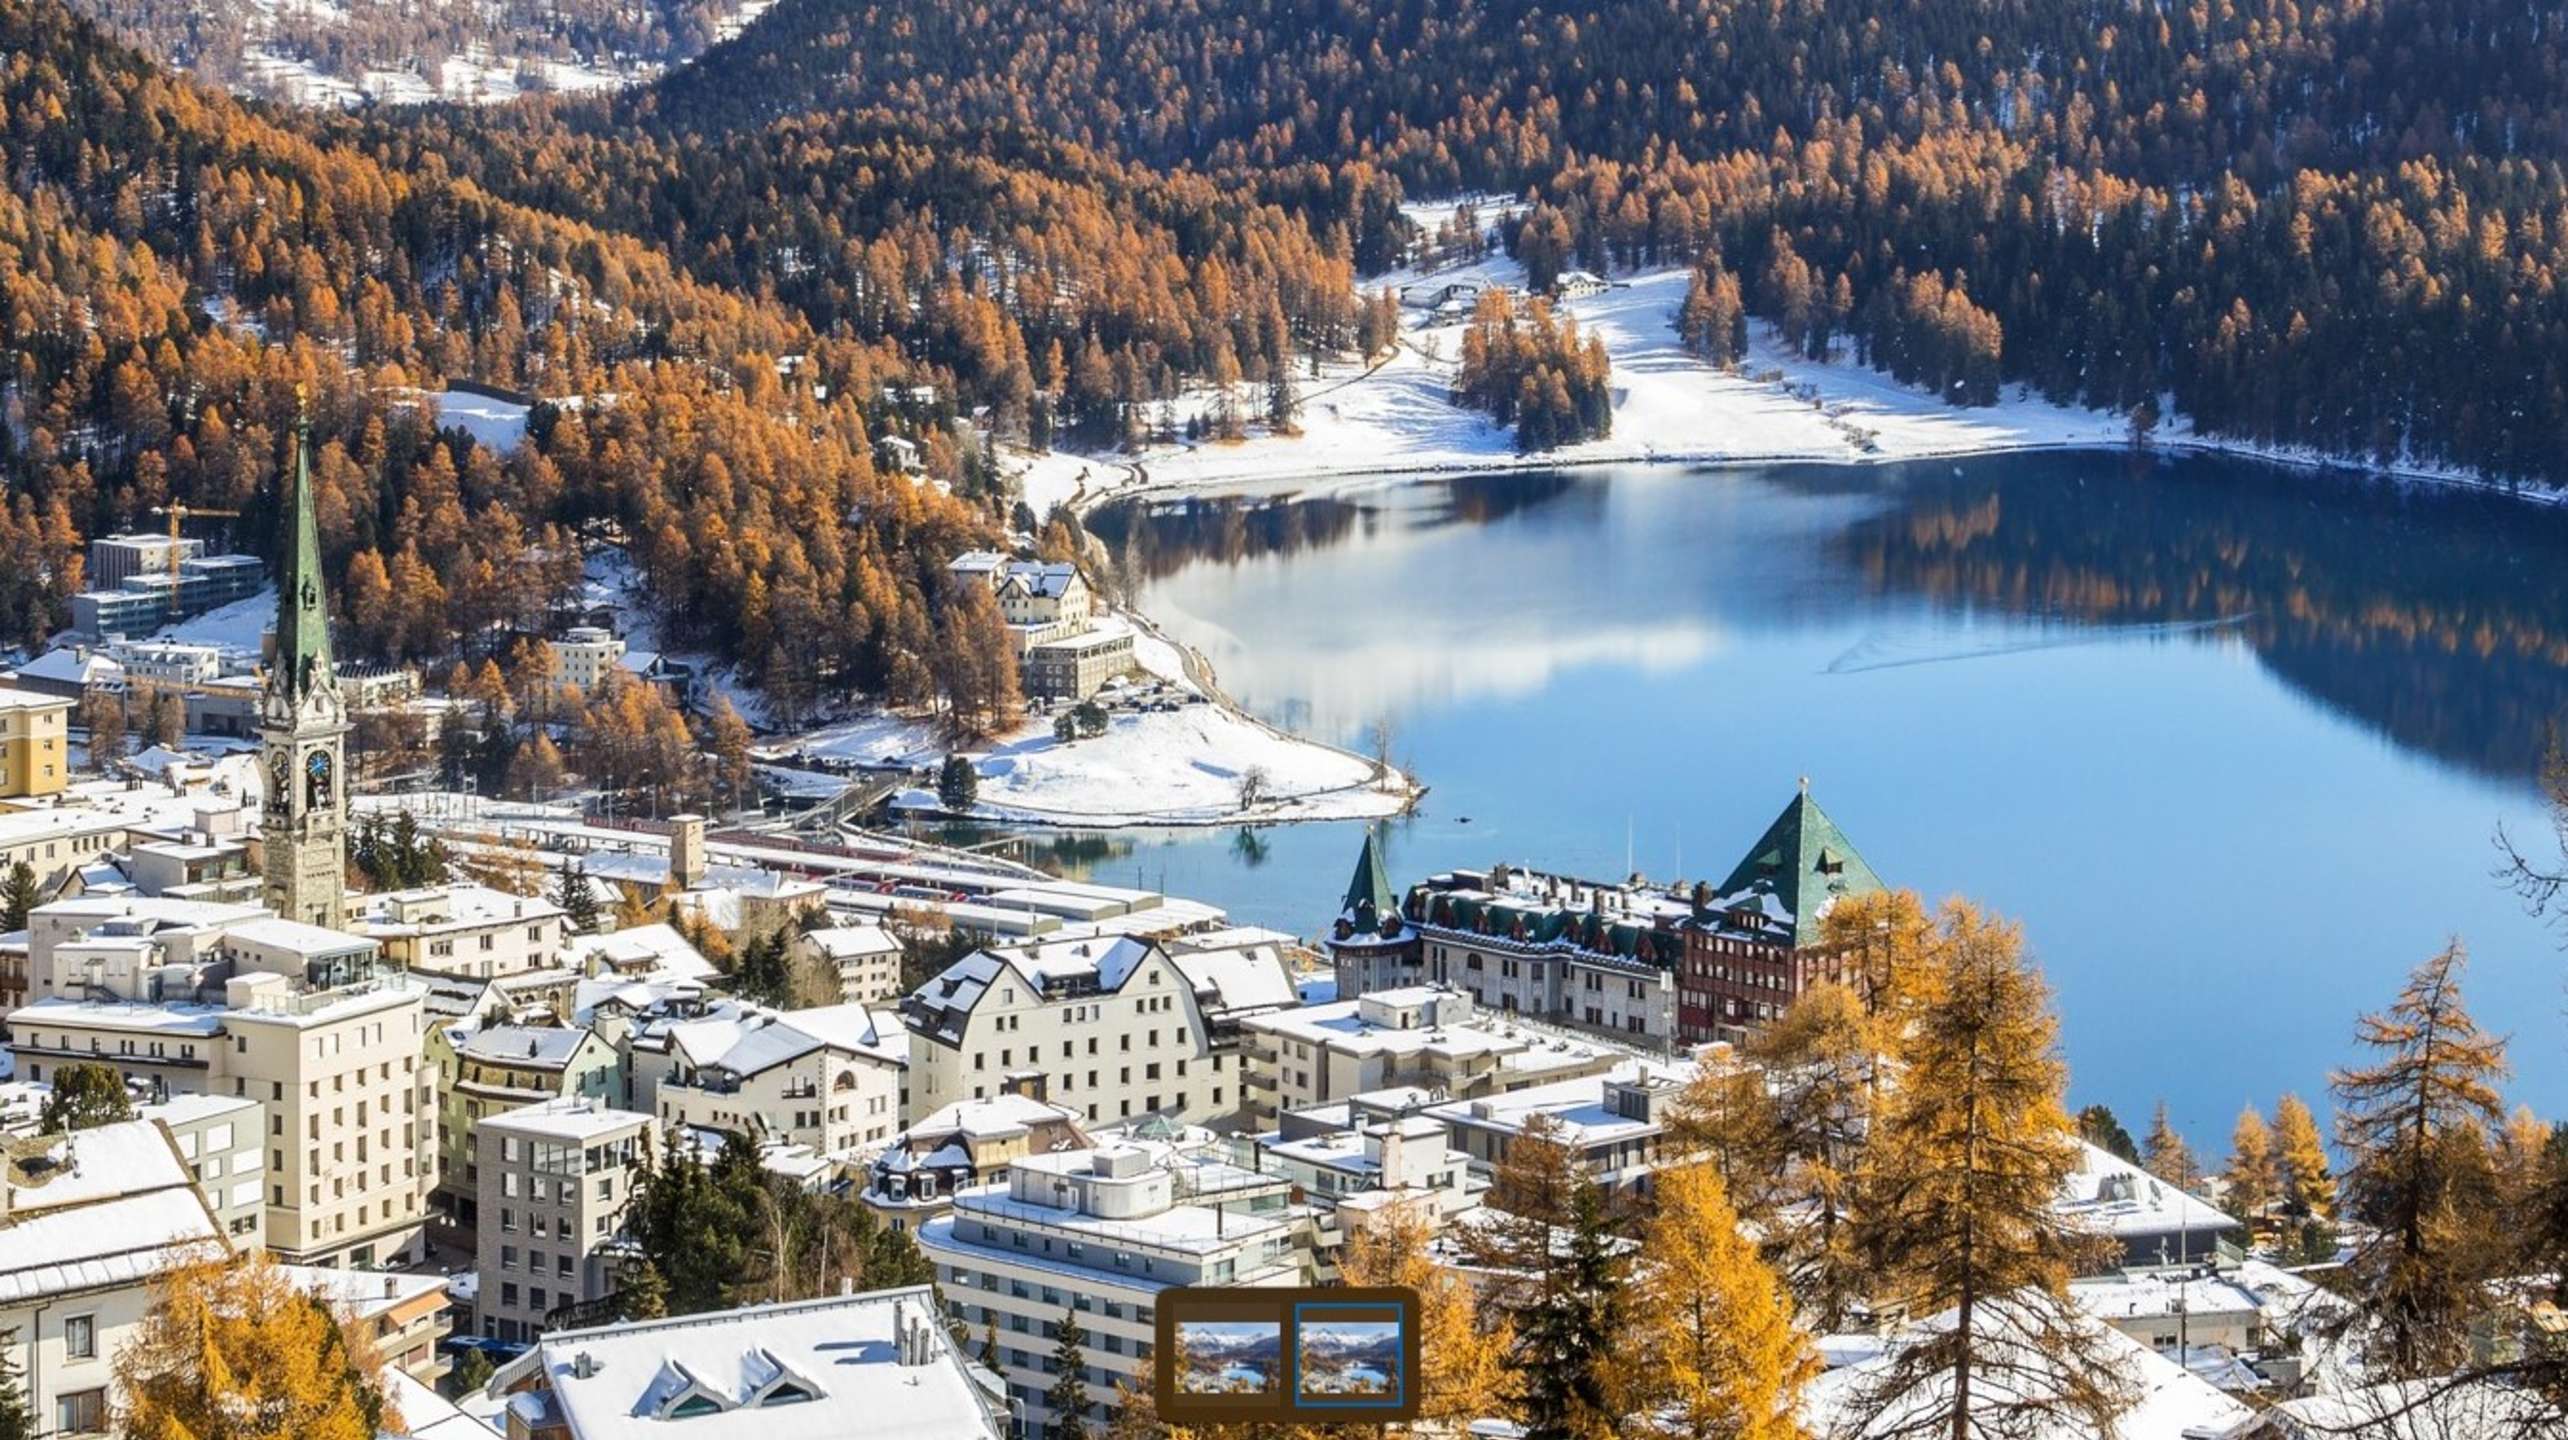 BK St. Moritz